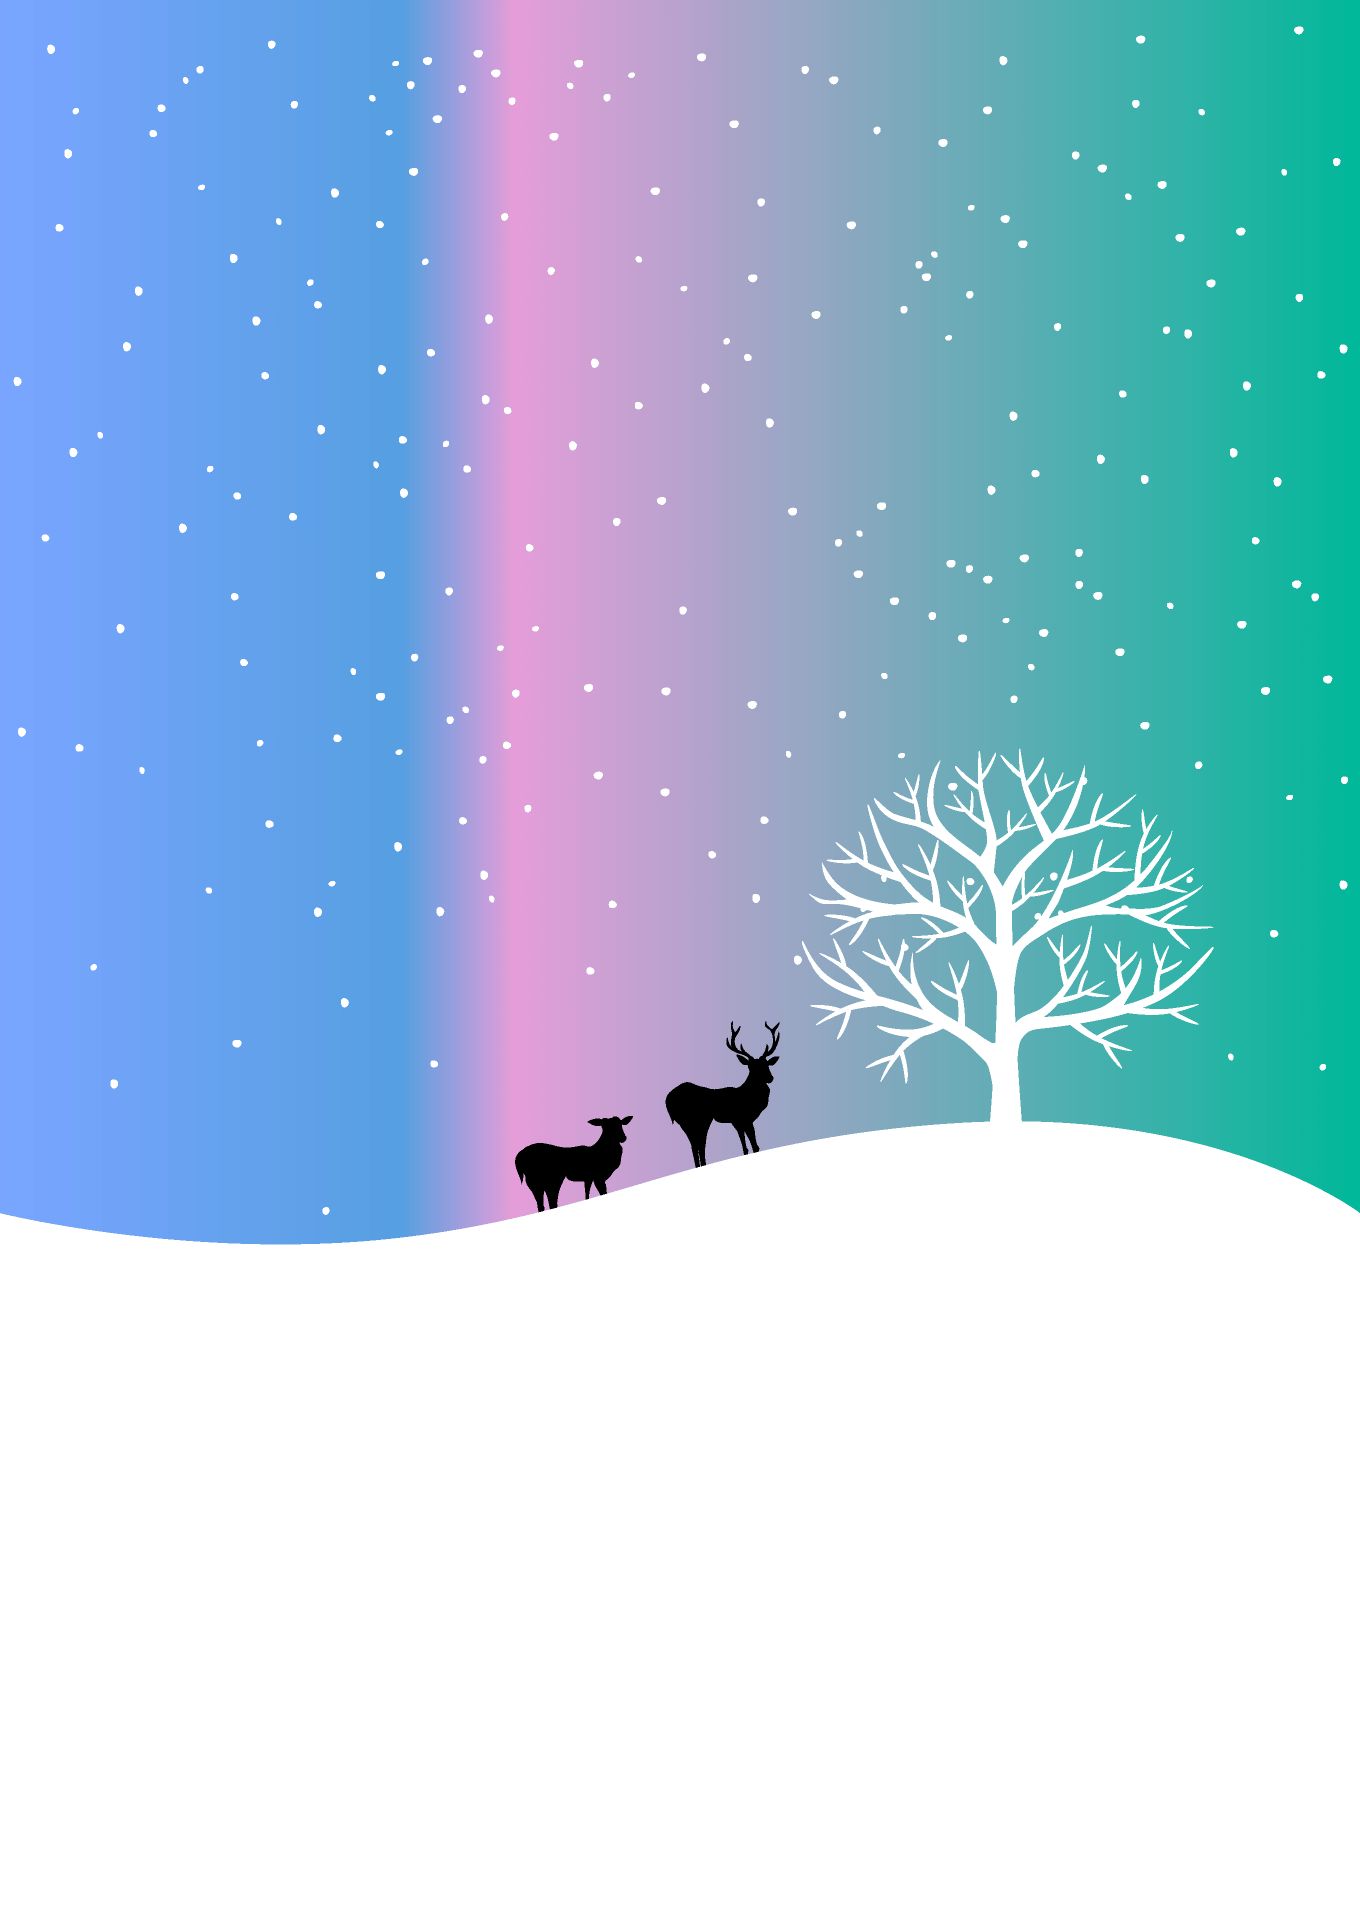 雪原の鹿シルエット背景画像 イラスト素材 超多くの無料かわいいイラスト素材